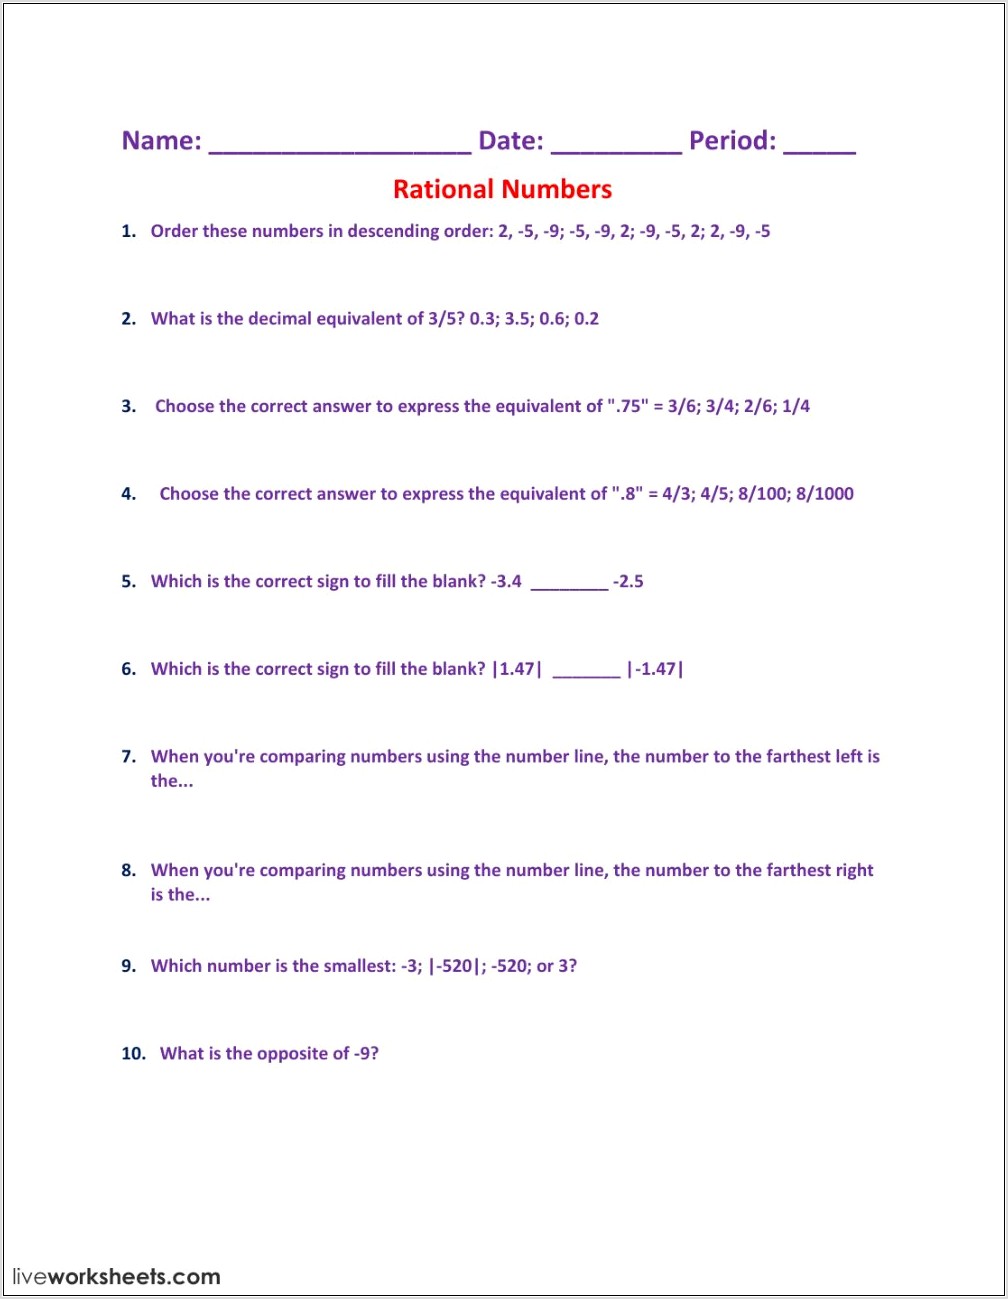 Understanding Rational Numbers Worksheet